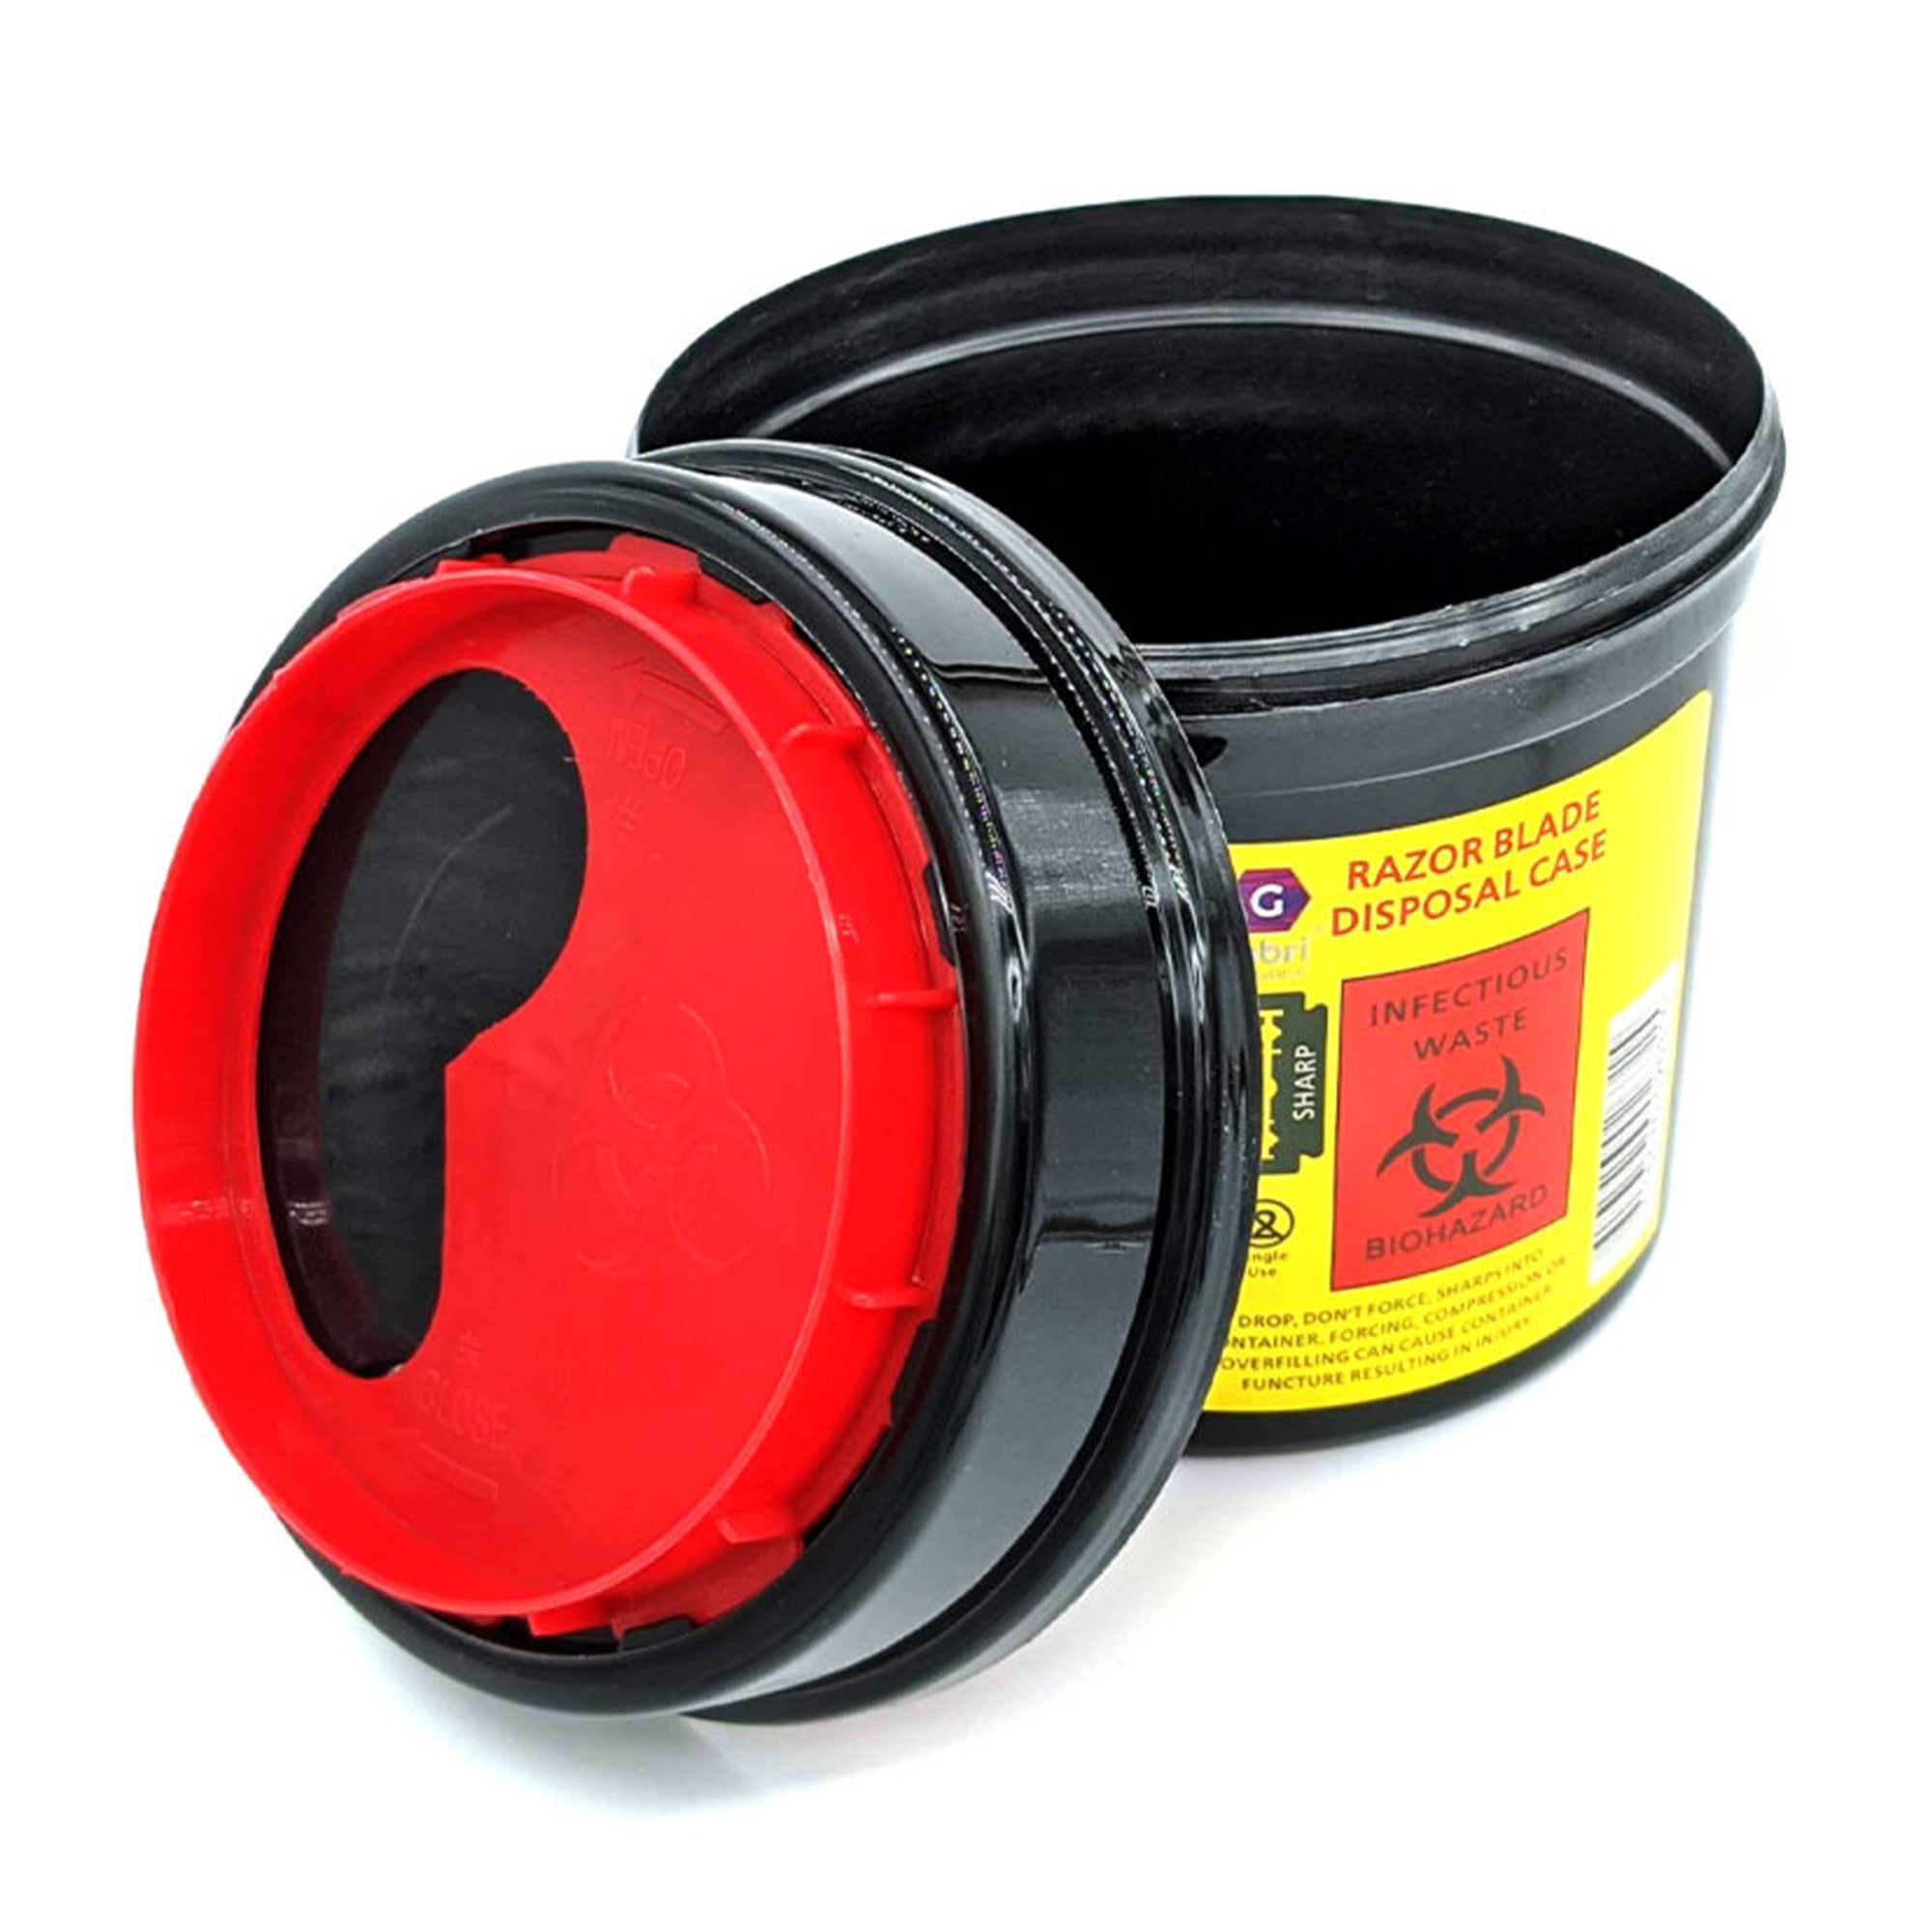 Gabri - Razor Blade Round Disposal Bin Case (Black-Red)